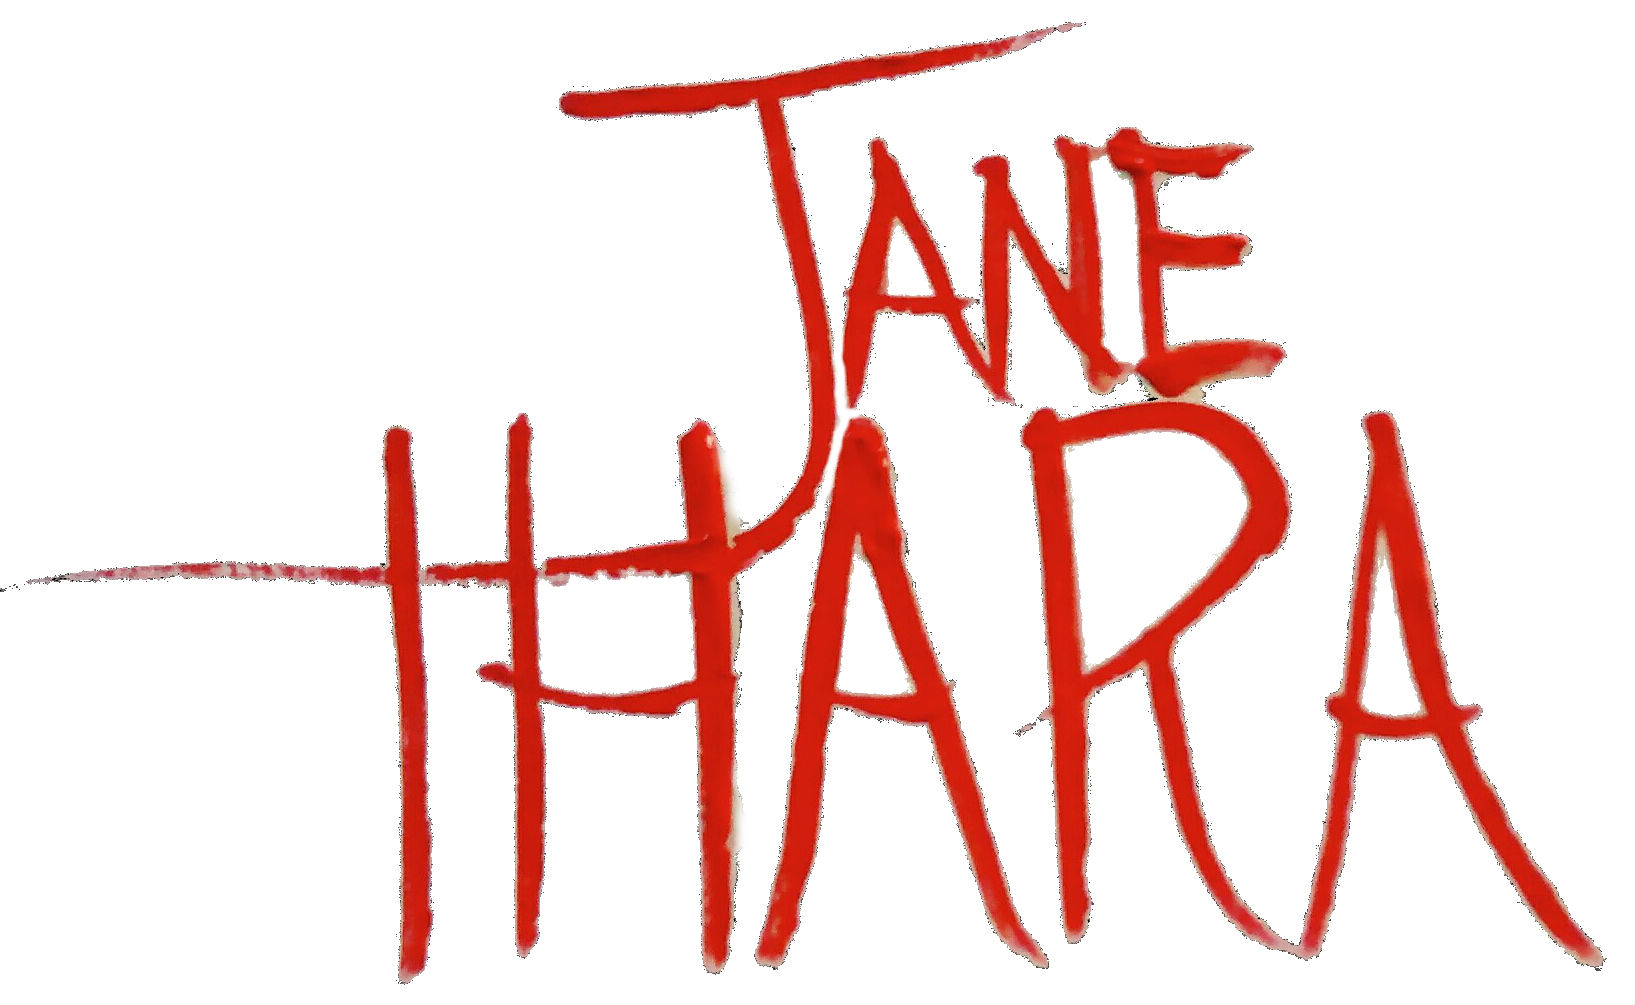 Jane Ihara